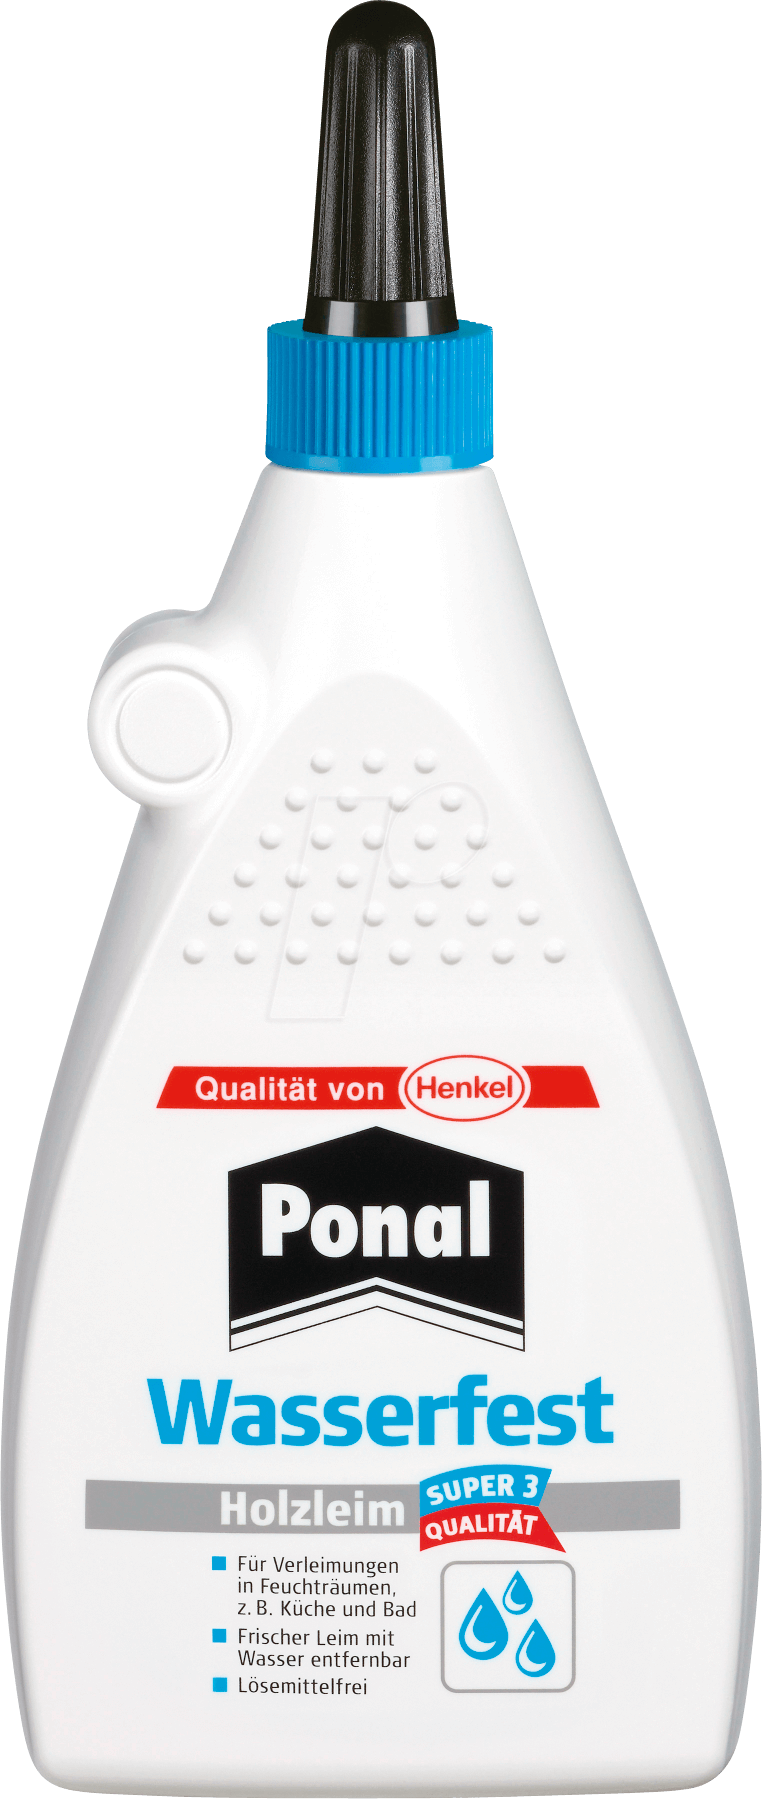 PONAL PN18S 225 - Holzleim, Ponal Super 3 PN 18S, 225 g von PONAL